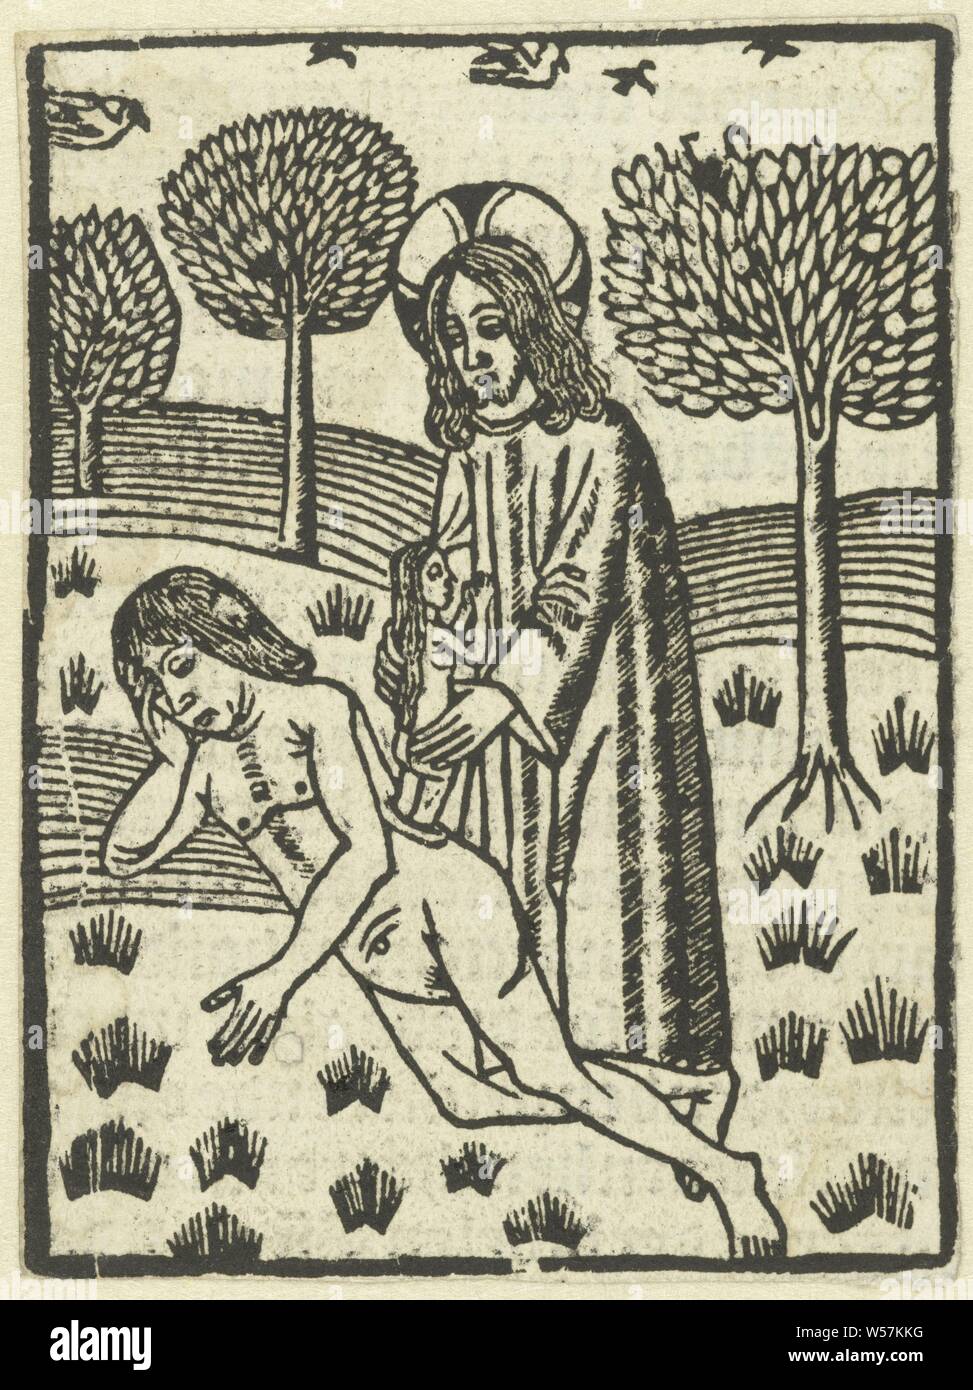 La création d'Ève, Page d'un livre. Dieu prend Eve à partir de la Côte d'Adam endormi. Des oiseaux et des arbres en arrière-plan., Eve est façonné à partir de la côte d'Adam, anonyme, Leiden (éventuellement), 1490 - 1510, papier, h 86 mm × w 64 mm Banque D'Images